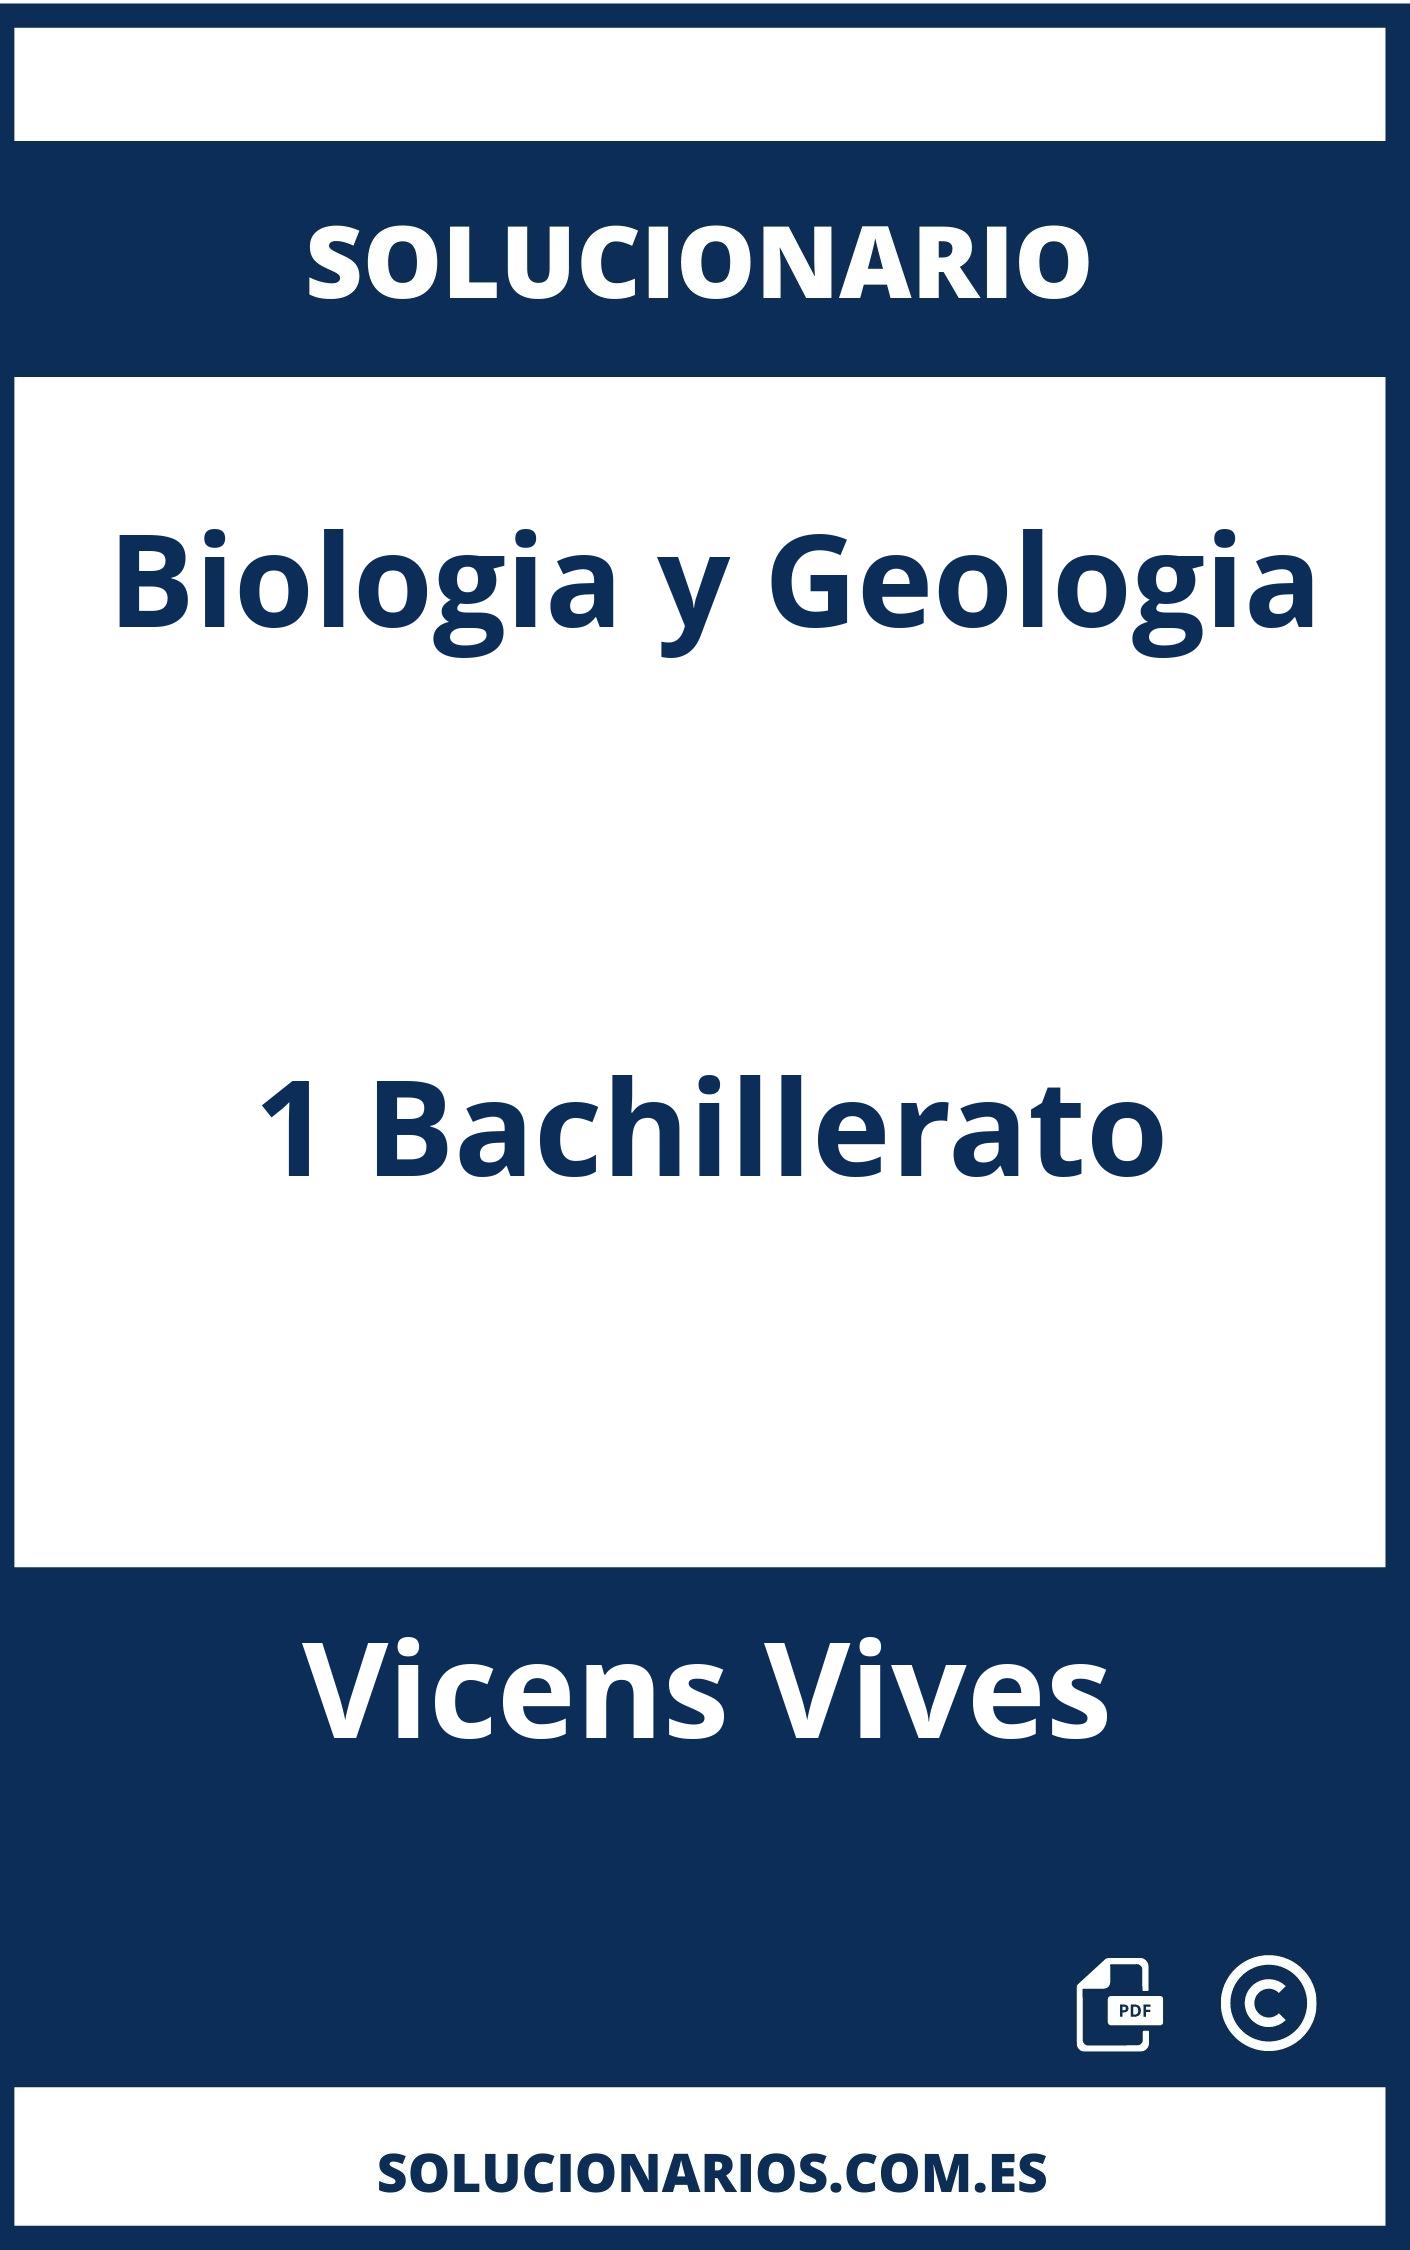 Solucionario Biologia y Geologia 1 Bachillerato Vicens Vives